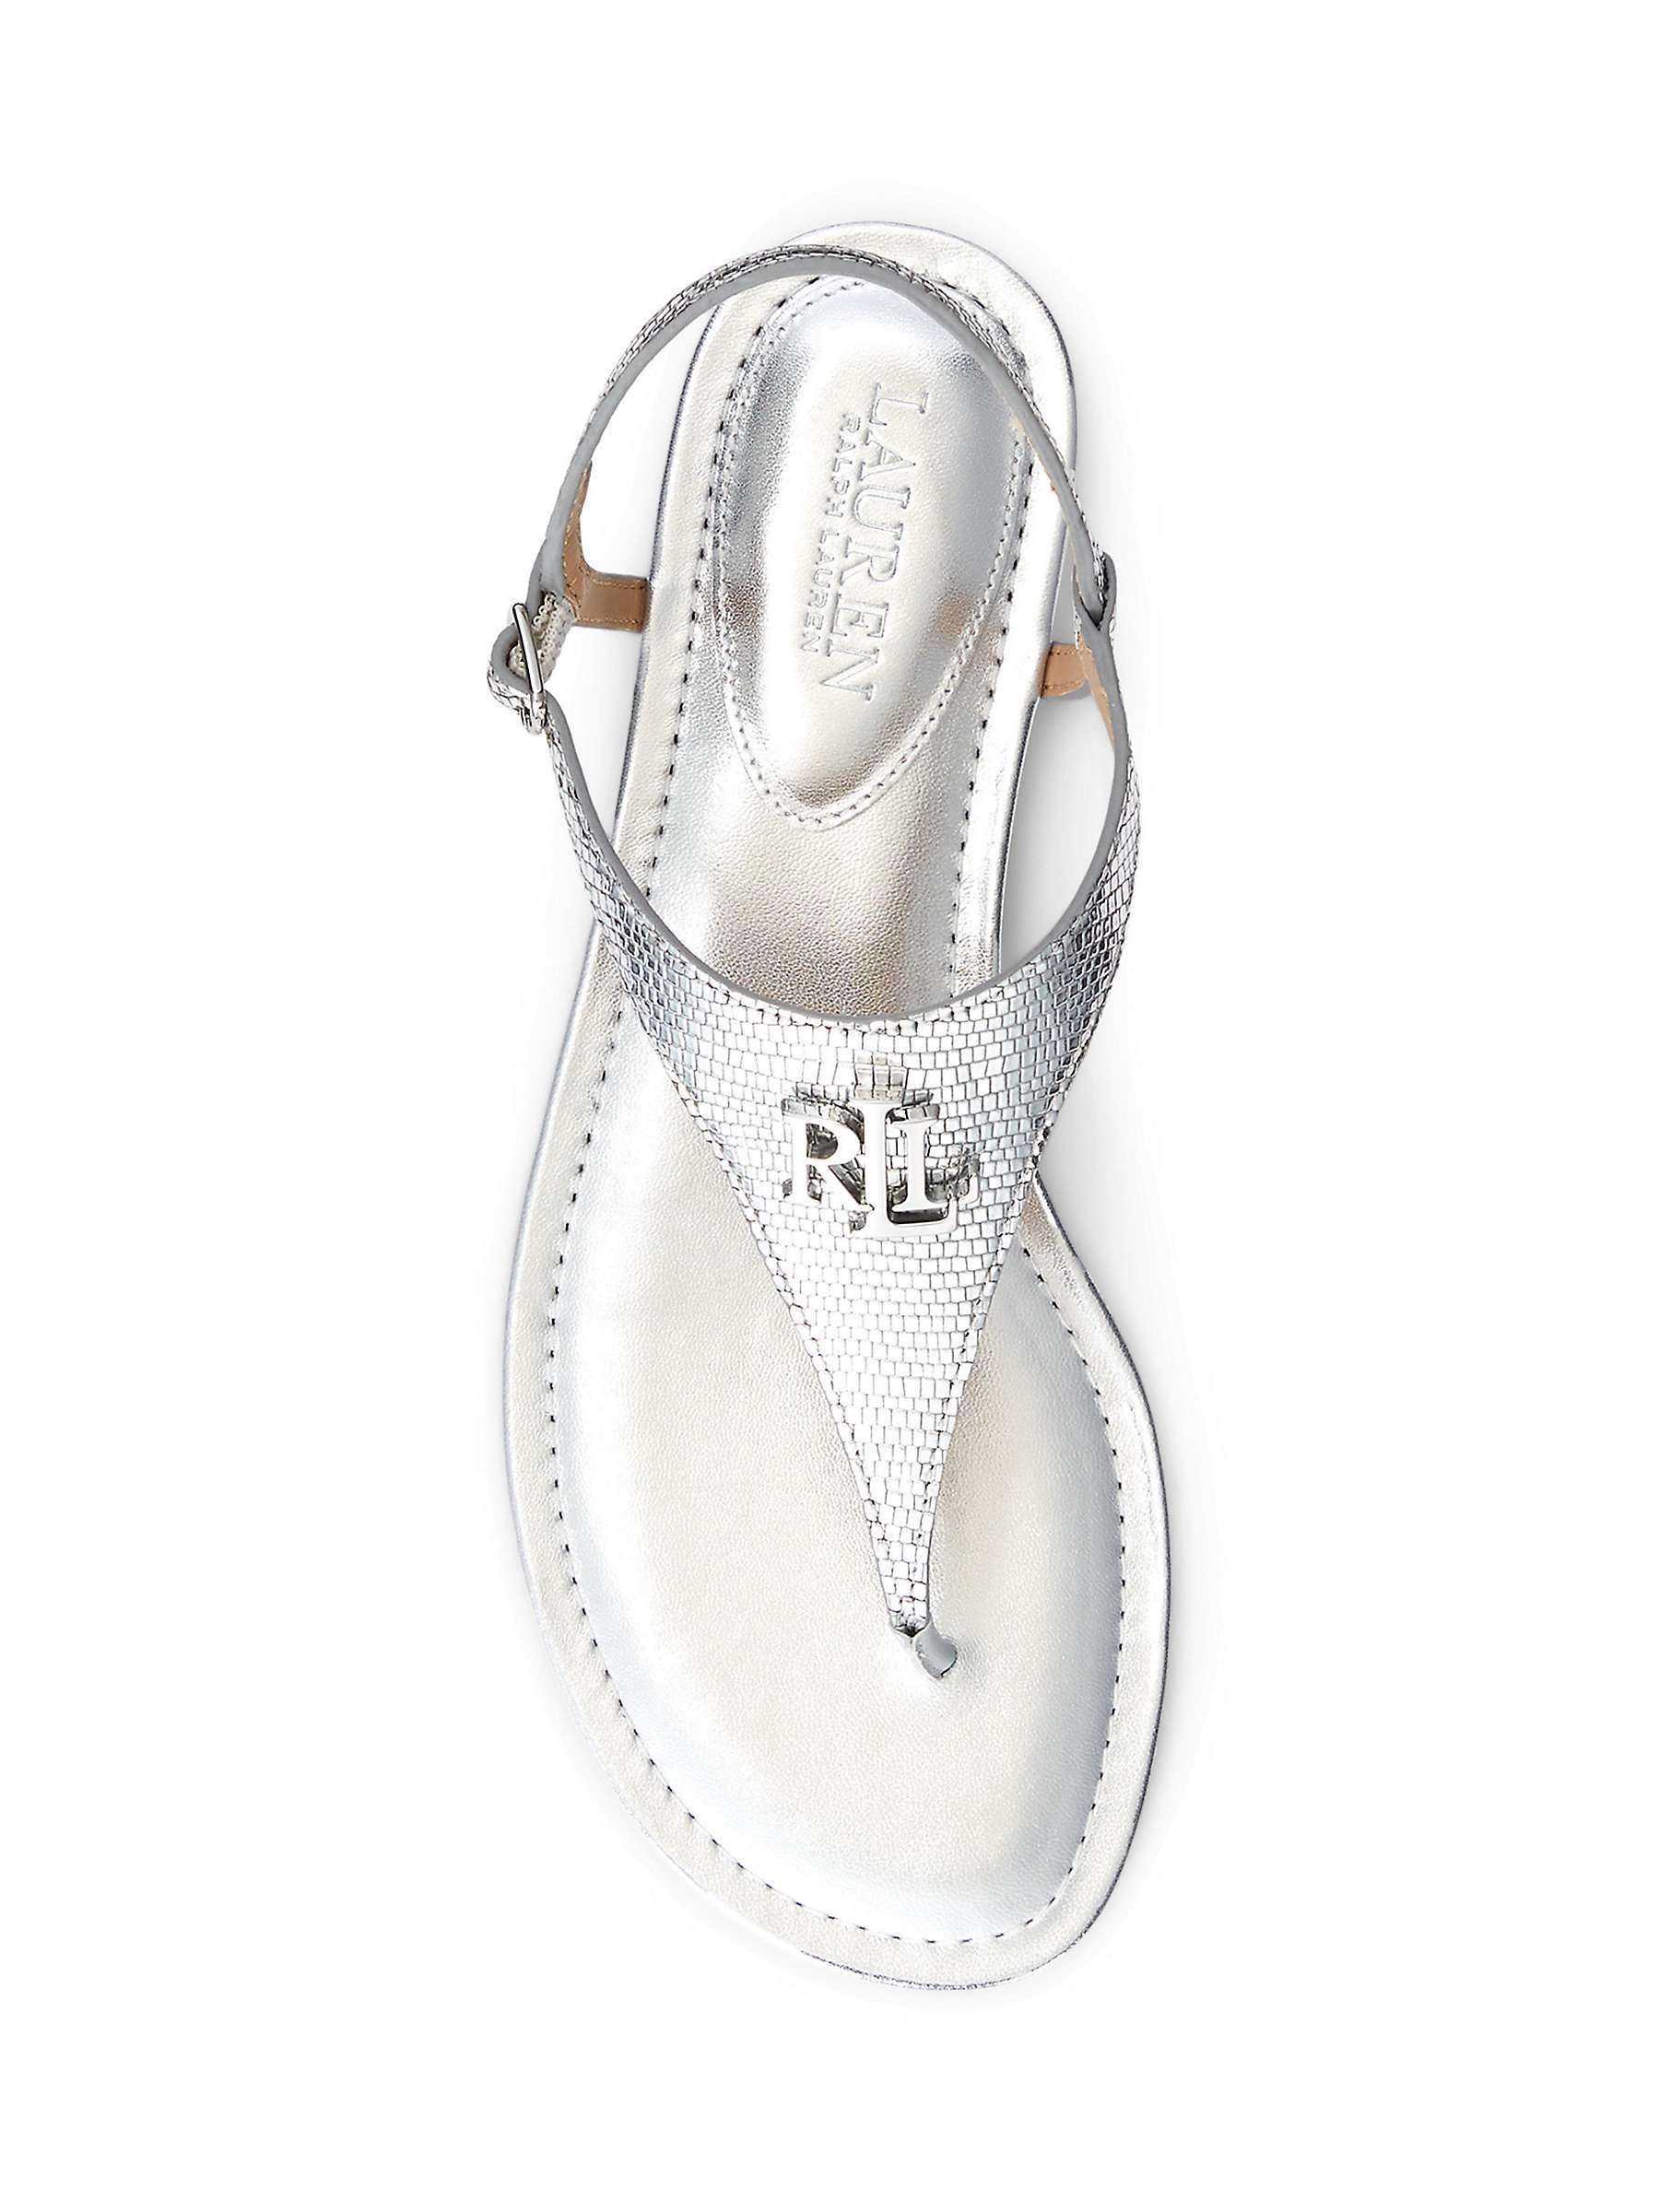 Buy Lauren Ralph Lauren Ellington Textured Leather Sandals, Silver Online at johnlewis.com